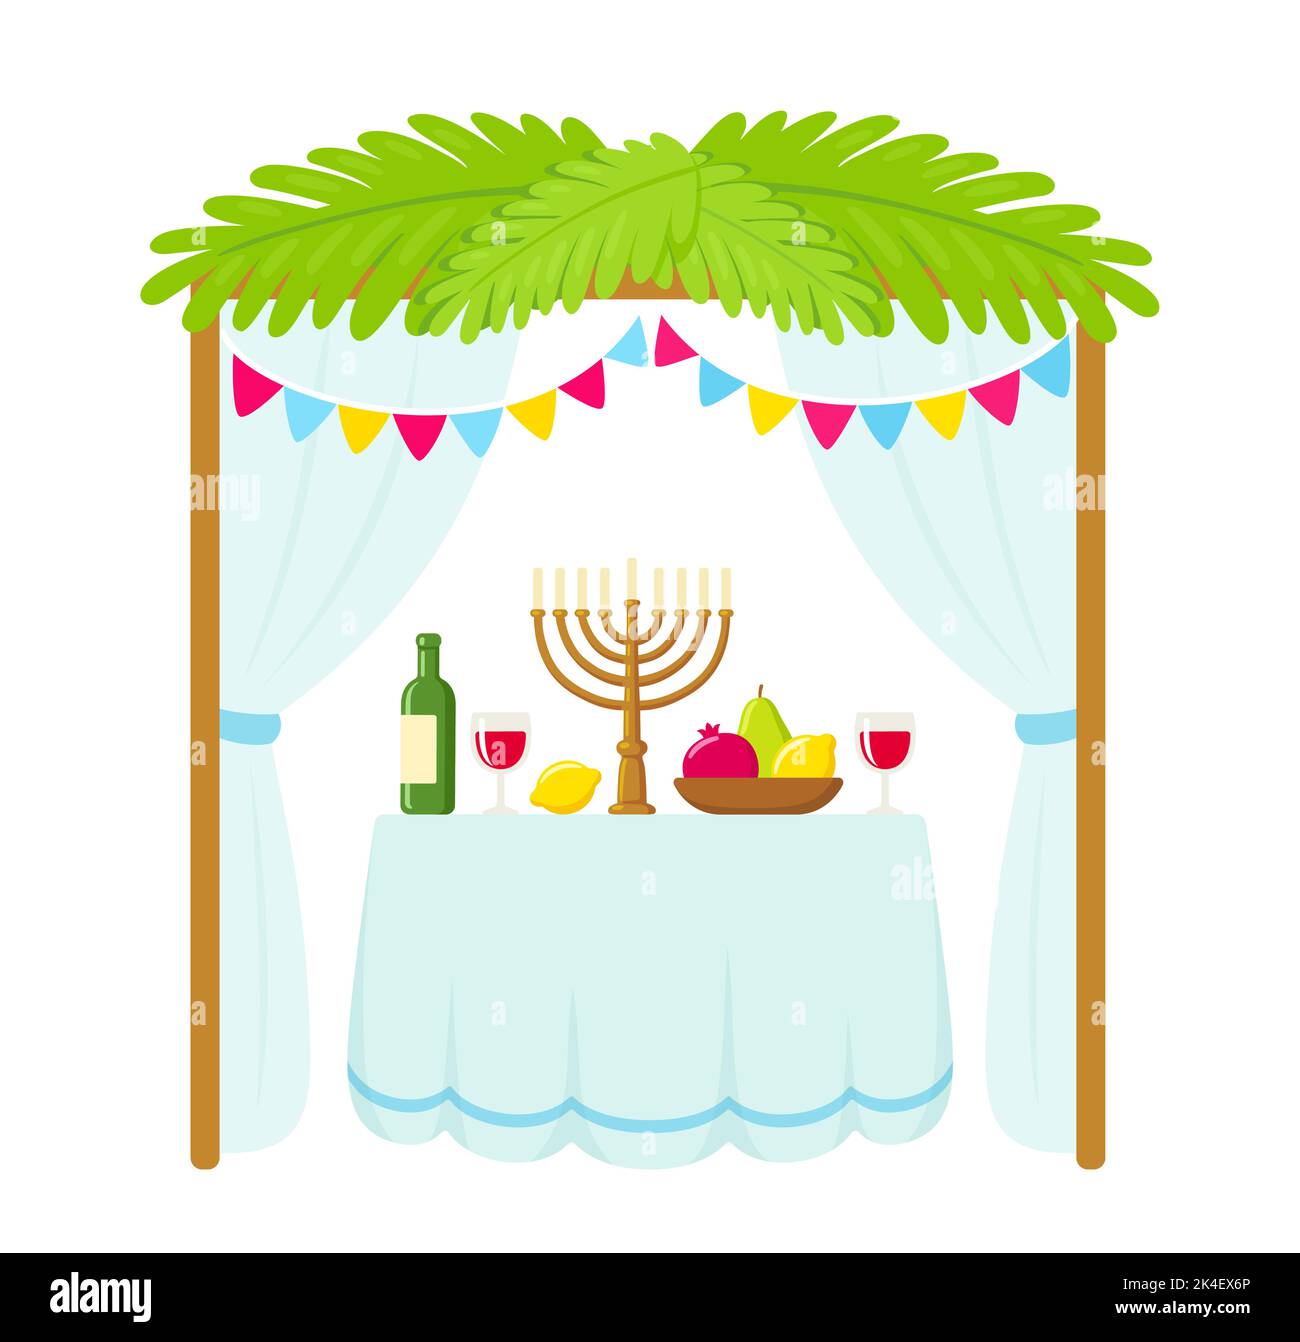 Tradizionale capanna Sukkah con decorazioni e tavolo con cibo per vacanze ebraiche Sukkot. Disegno carino del cartone animato, illustrazione isolata del vettore. Illustrazione Vettoriale